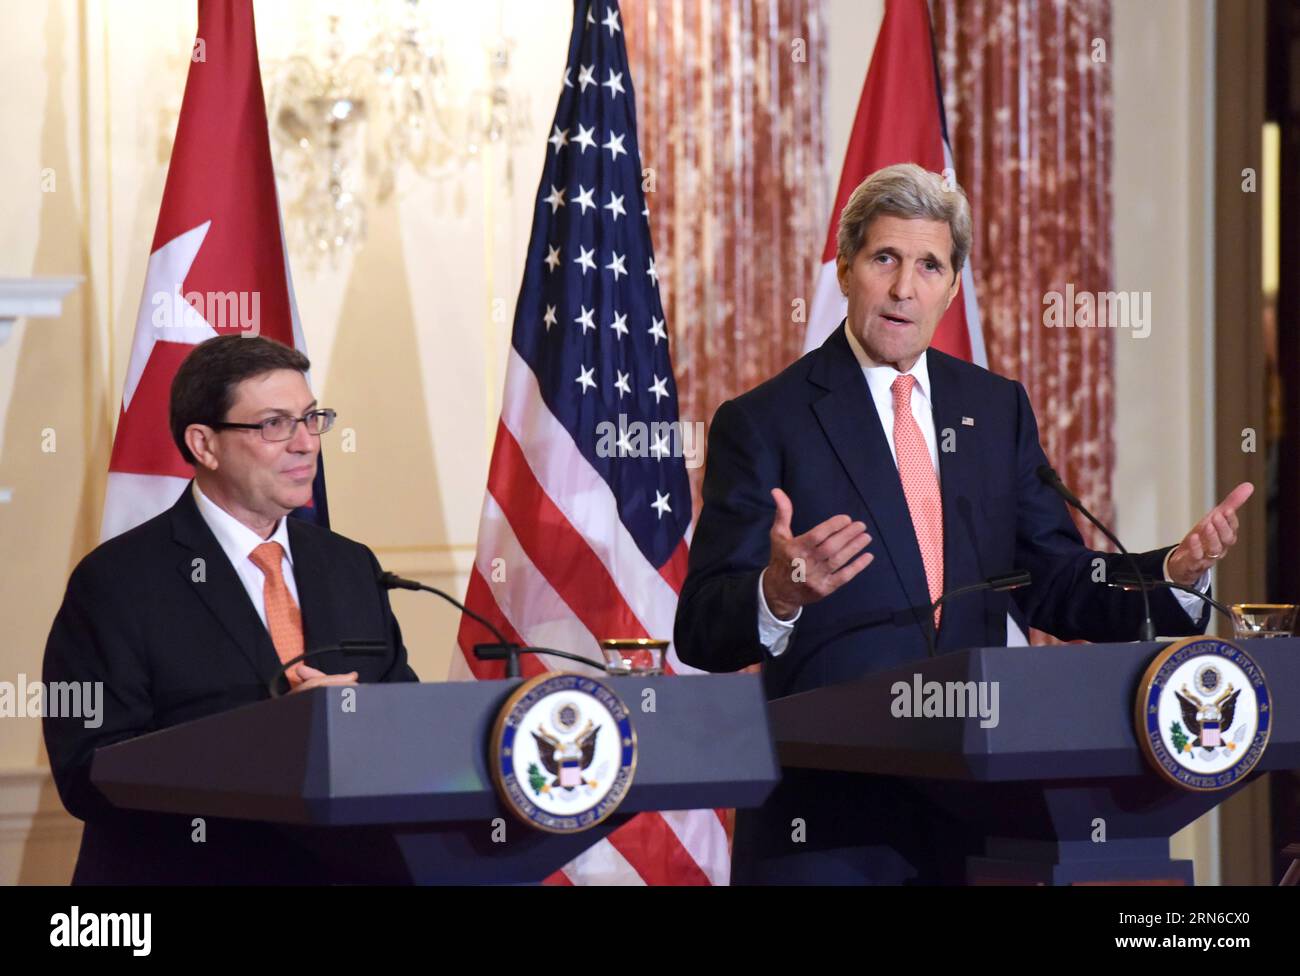 WASHINGTON D.C., 20 de julio de 2015 -- El Secretario de Estado de los Estados Unidos, John Kerry (R), y el Ministro de Relaciones Exteriores de Cuba, Bruno Rodríguez, hablan a los medios durante una conferencia de prensa conjunta en el Departamento de Estado en Washington, D.C., Estados Unidos, el 20 de julio de 2015. Estados Unidos y Cuba restablecieron las relaciones diplomáticas el lunes. ) EE.UU.-WASHINGTON D.C.-CUBA-RELACIONES DIPLOMÁTICAS YinxBogu PUBLICATIONxNOTxINxCHN WASHINGTON D C JULIO 20 2015 El Secretario de Estado de los Estados Unidos John Kerry r y los Ministros de Relaciones Exteriores de Cuba Bruno Rodríguez hablan a los medios durante una conferencia de prensa conjunta en el Departamento de Estado en Washington D C TH Foto de stock